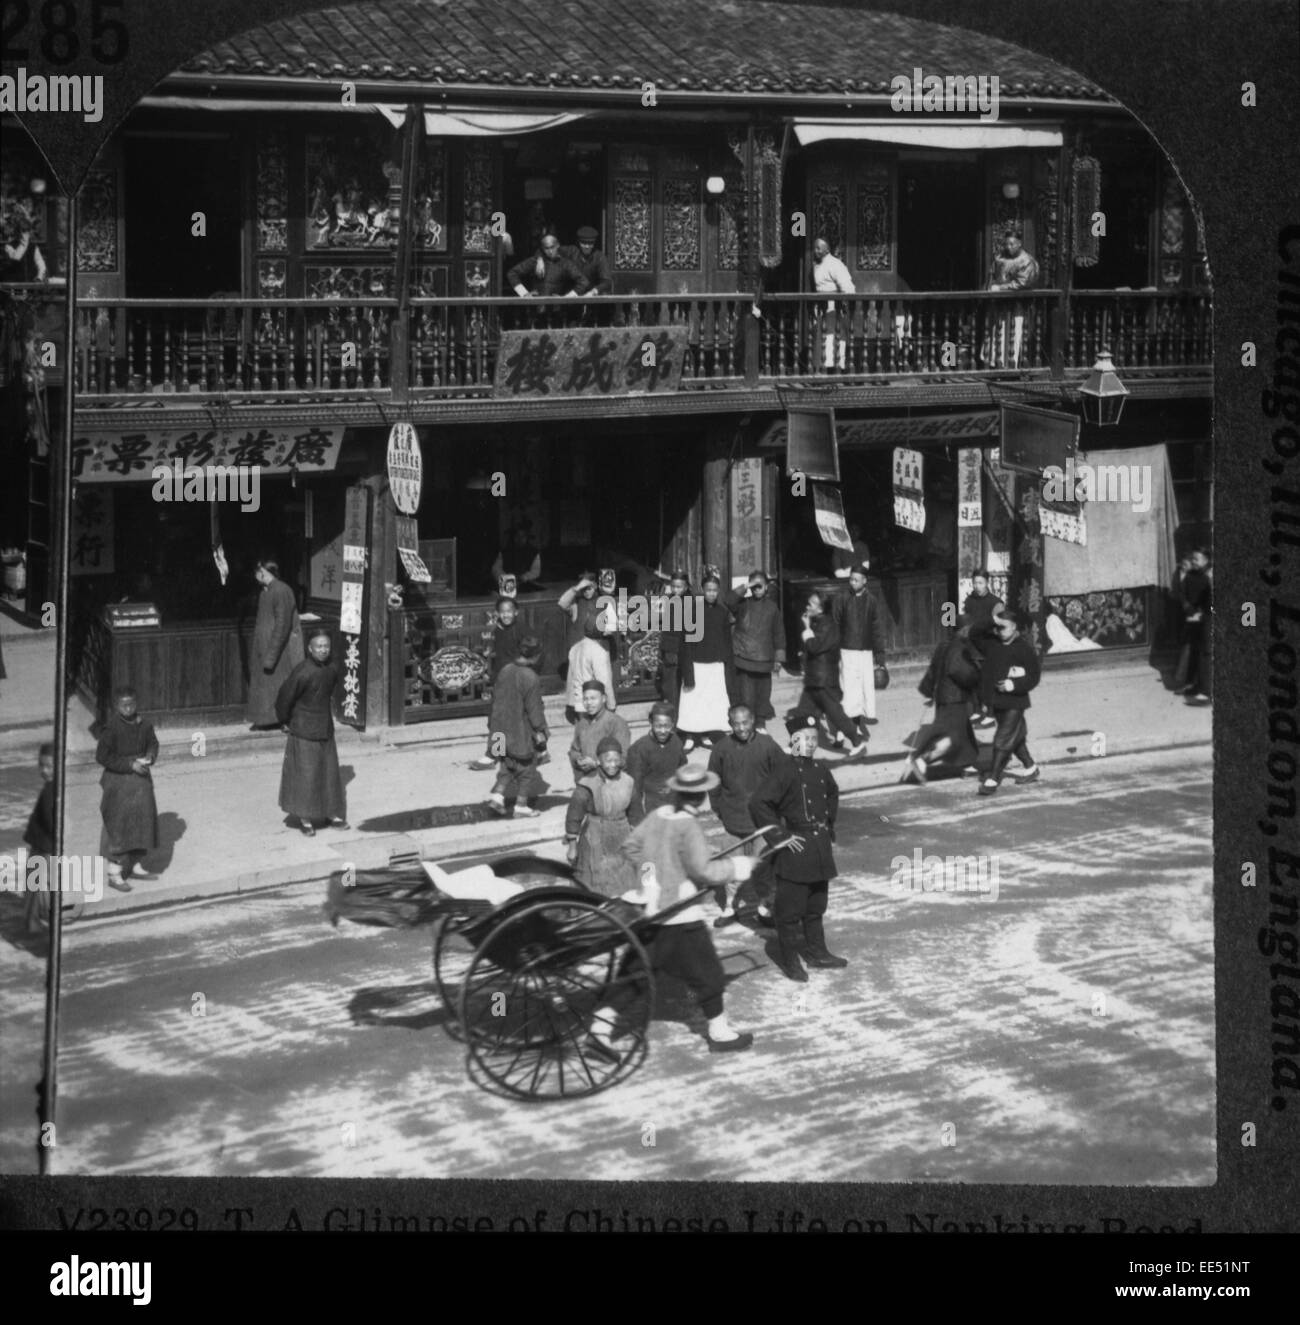 Jinirikisha et salon de thé sur Nankin Road, Shanghai, Chine, vers 1900 Banque D'Images